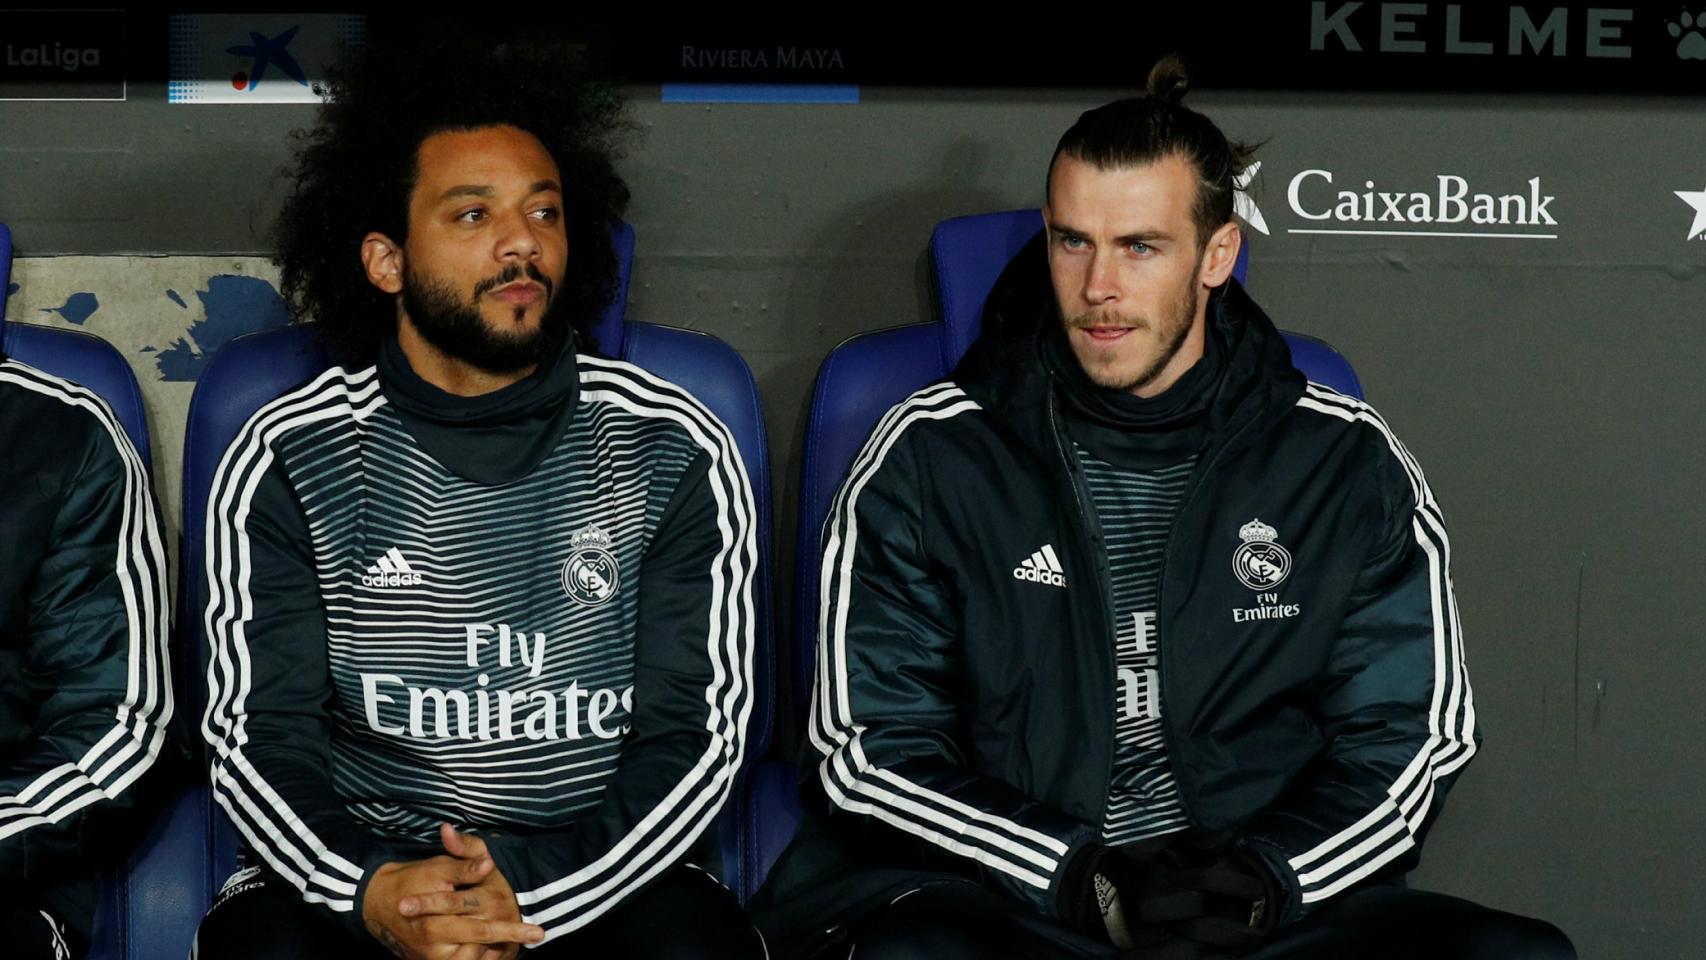 Marcelo y Bale en el banquillo del Madrid